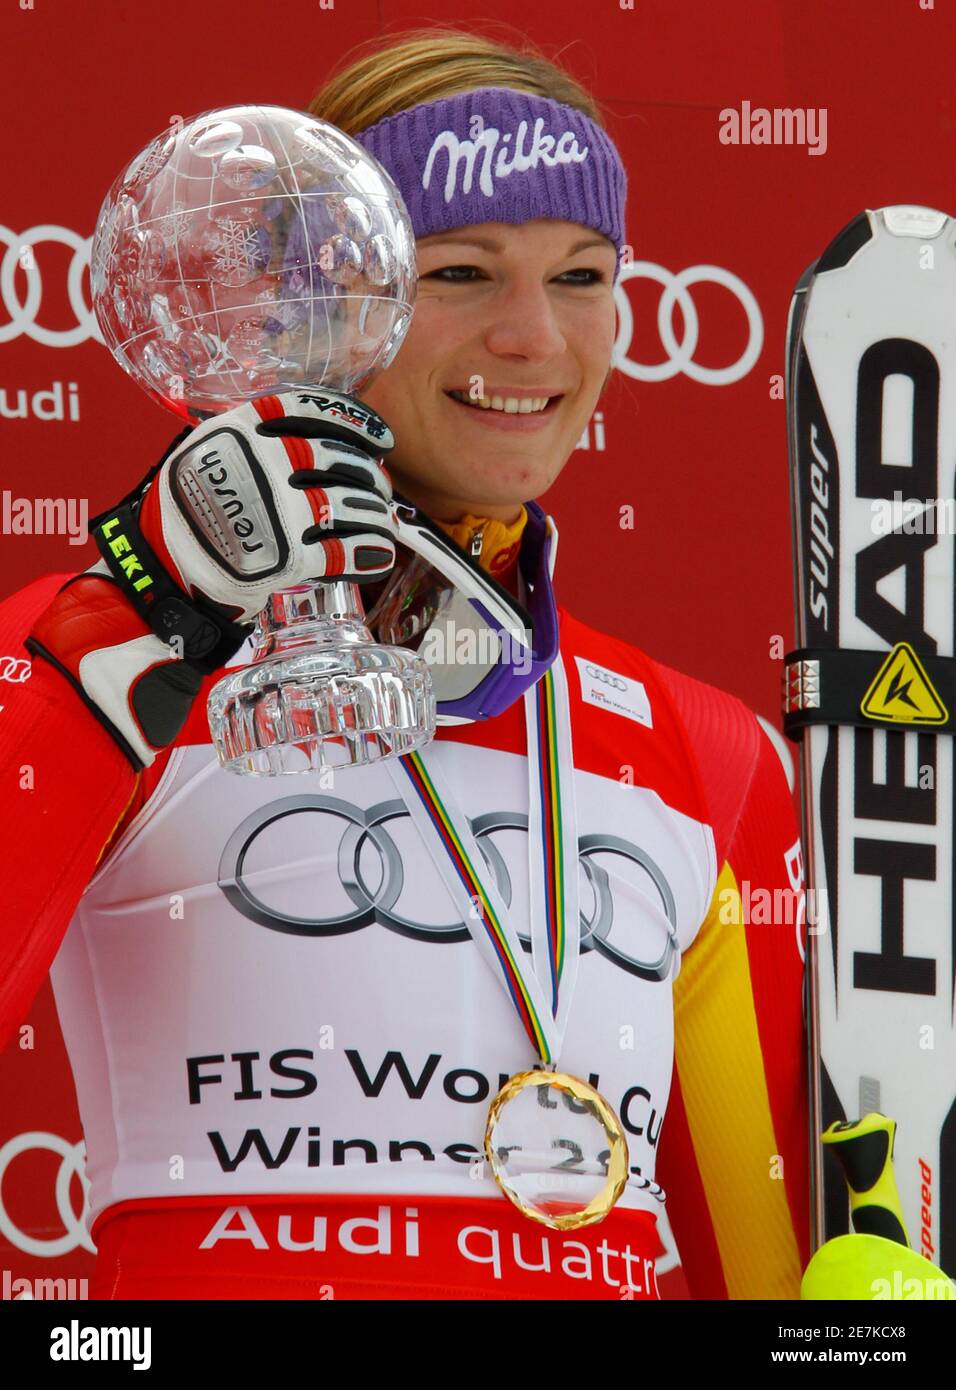 Maria Riesch aus Deutschland posiert beim Saisonfinale in Garmisch-Partenkirchen am 13. März 2010 mit der Damen-Slalom Alpin Ski Weltcup Trophäe. REUTERS/Wolfgang Rattay (DEUTSCHLAND SPORTSKI) Stockfoto